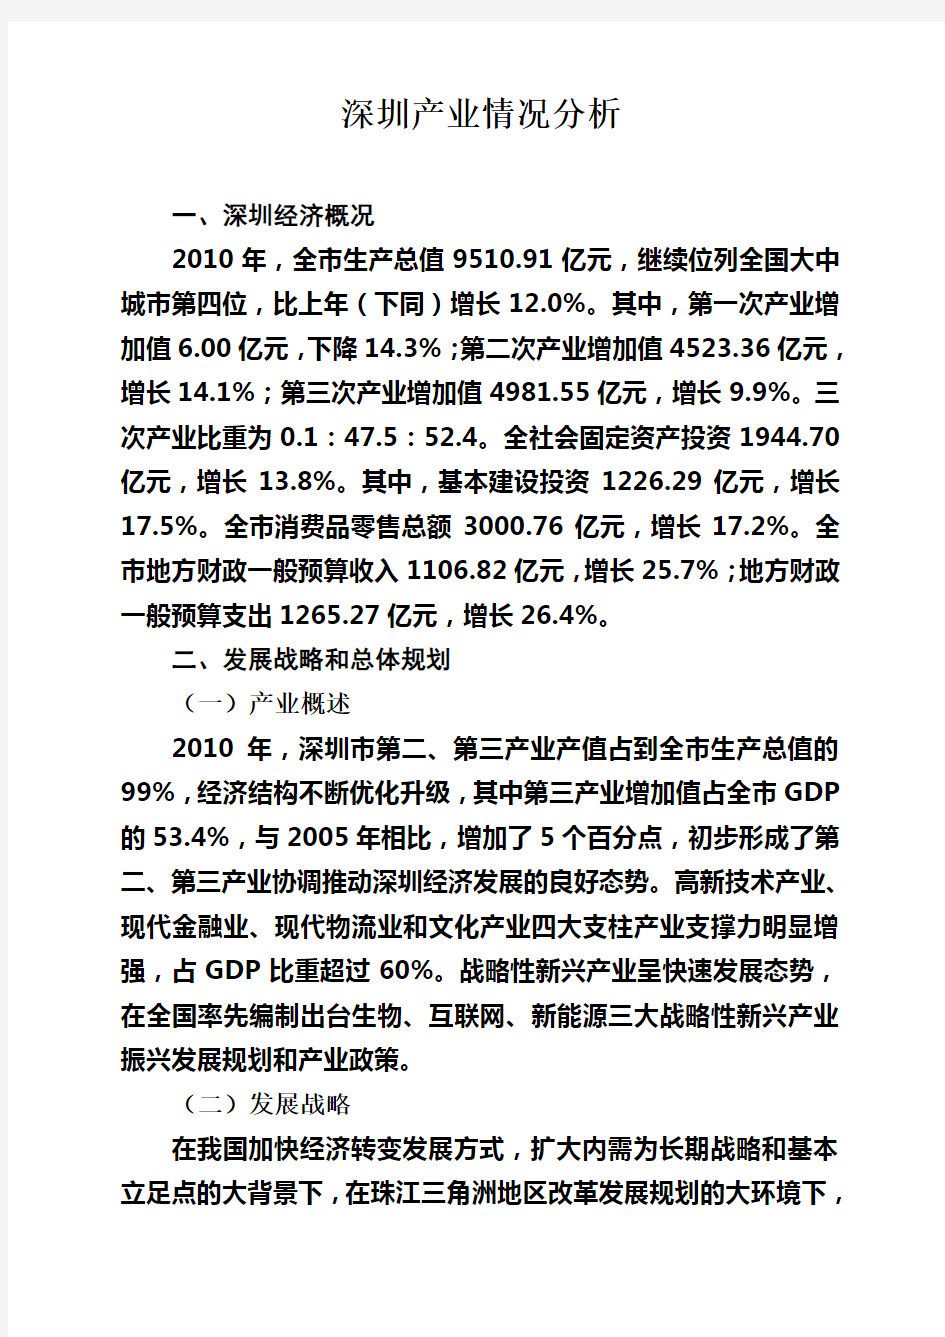 深圳产业情况分析报告(终稿)